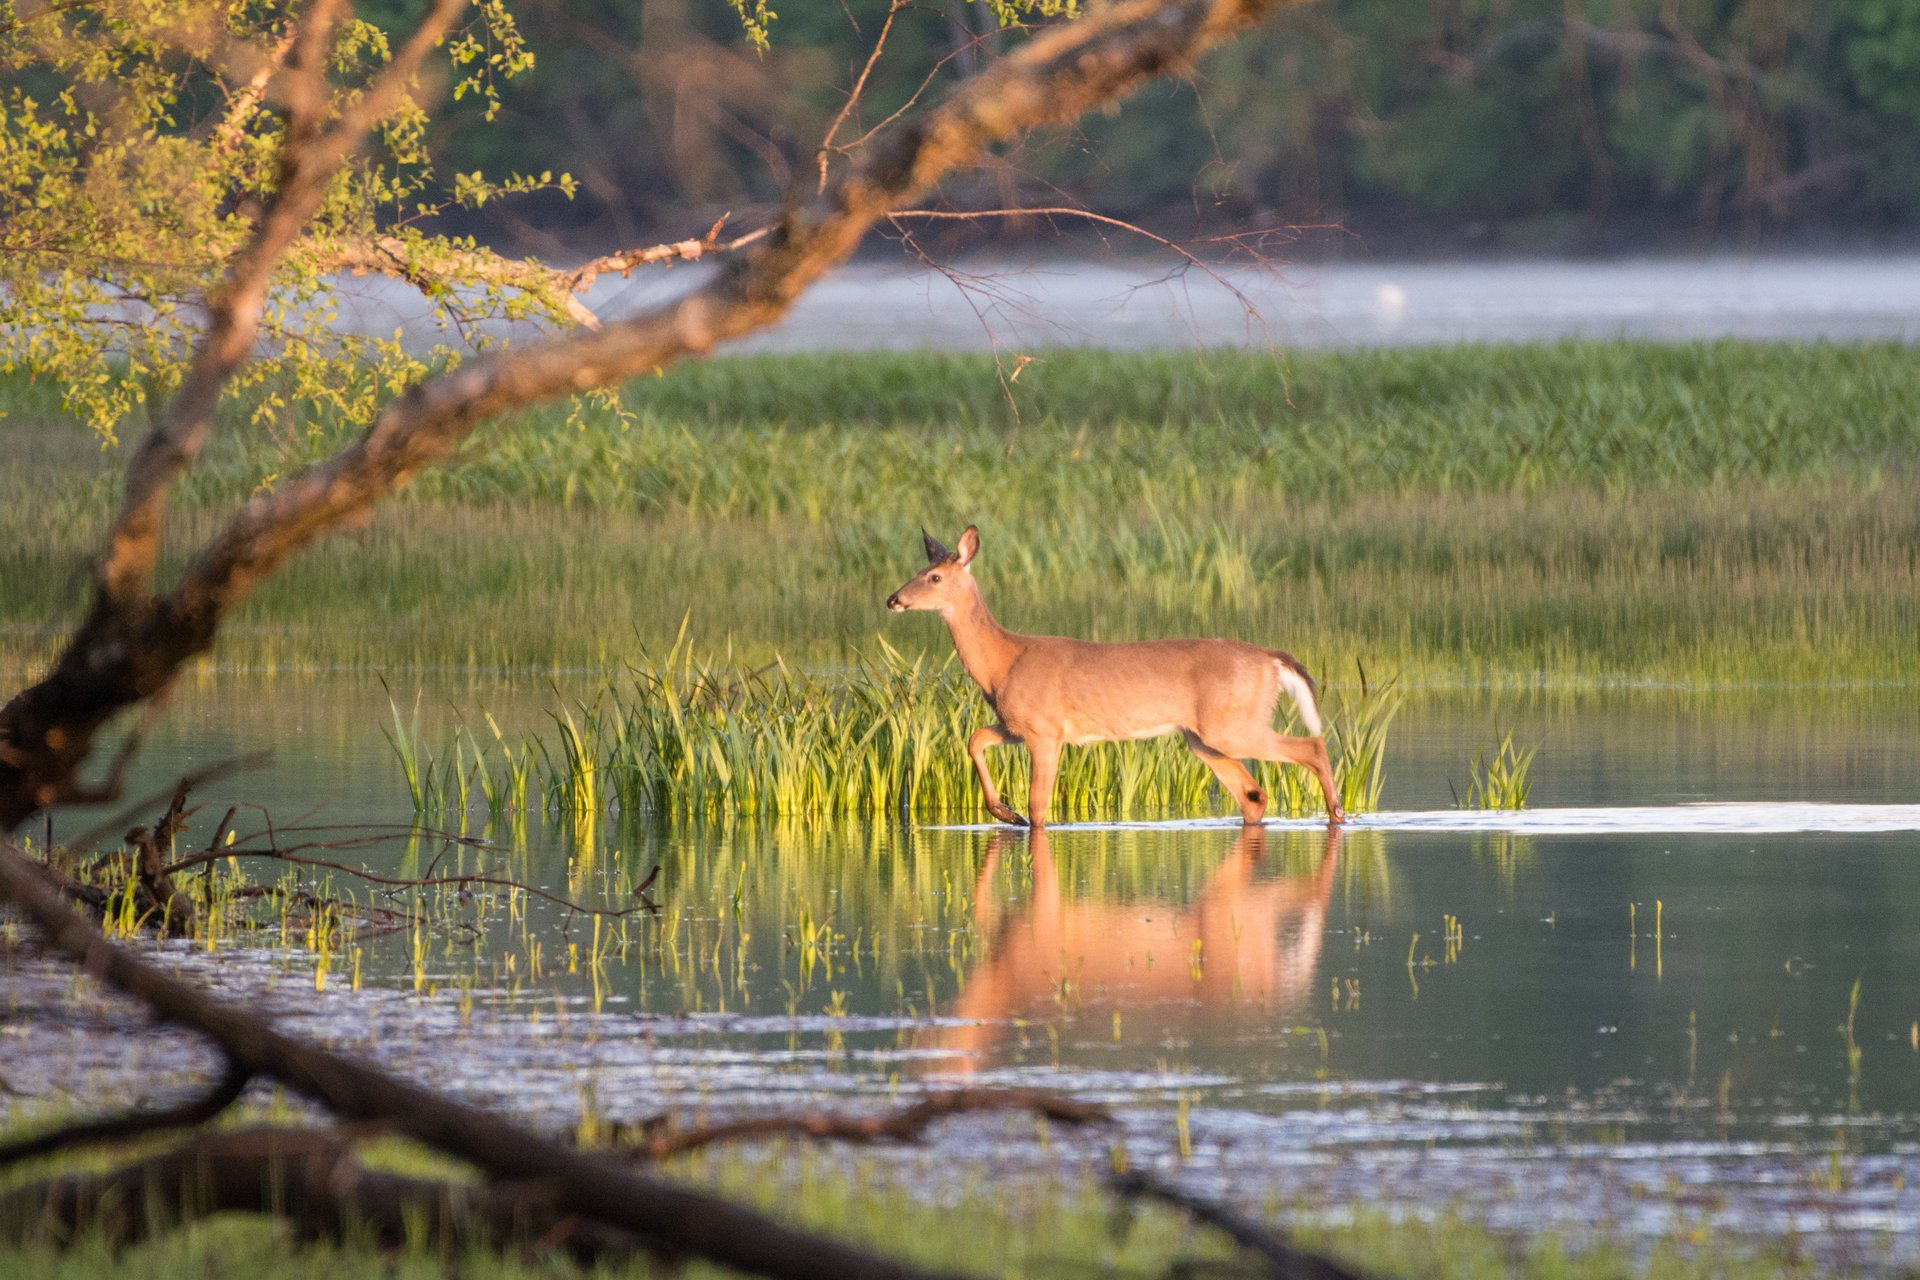 A deer stepping through shallow water, tall grass behind it.